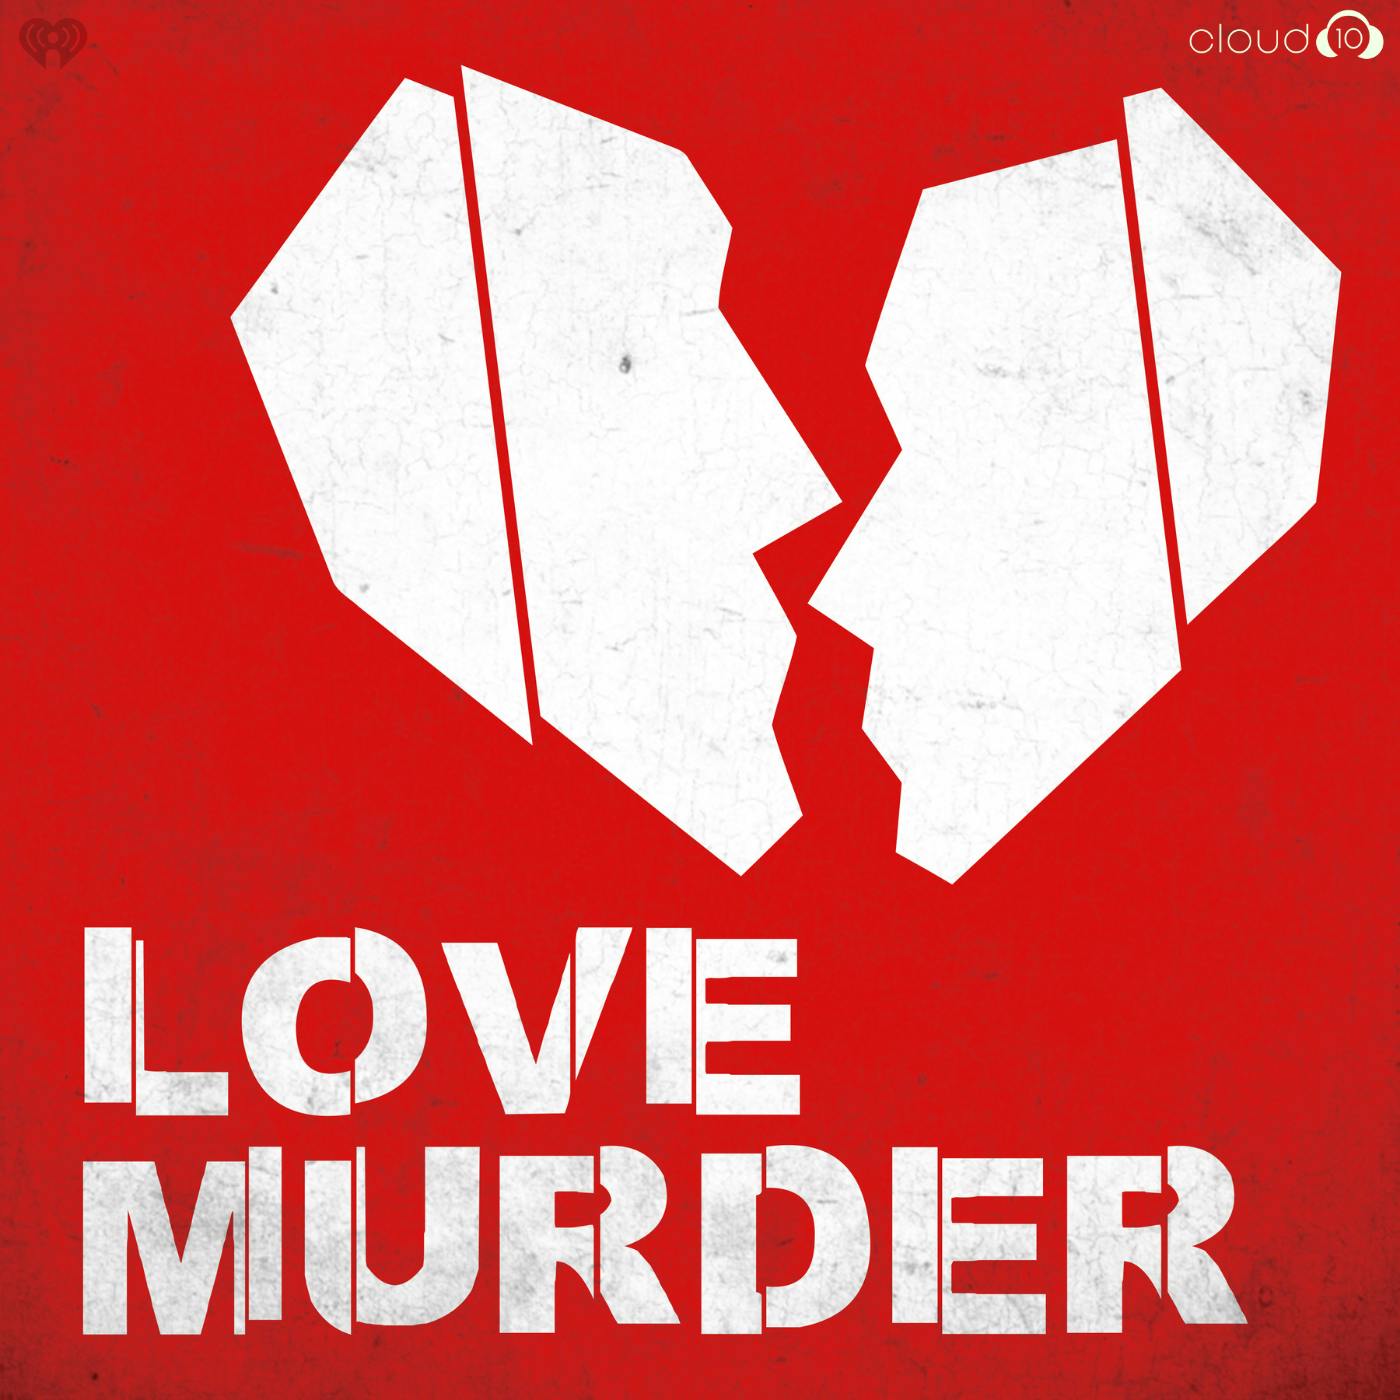 LOVE MURDER